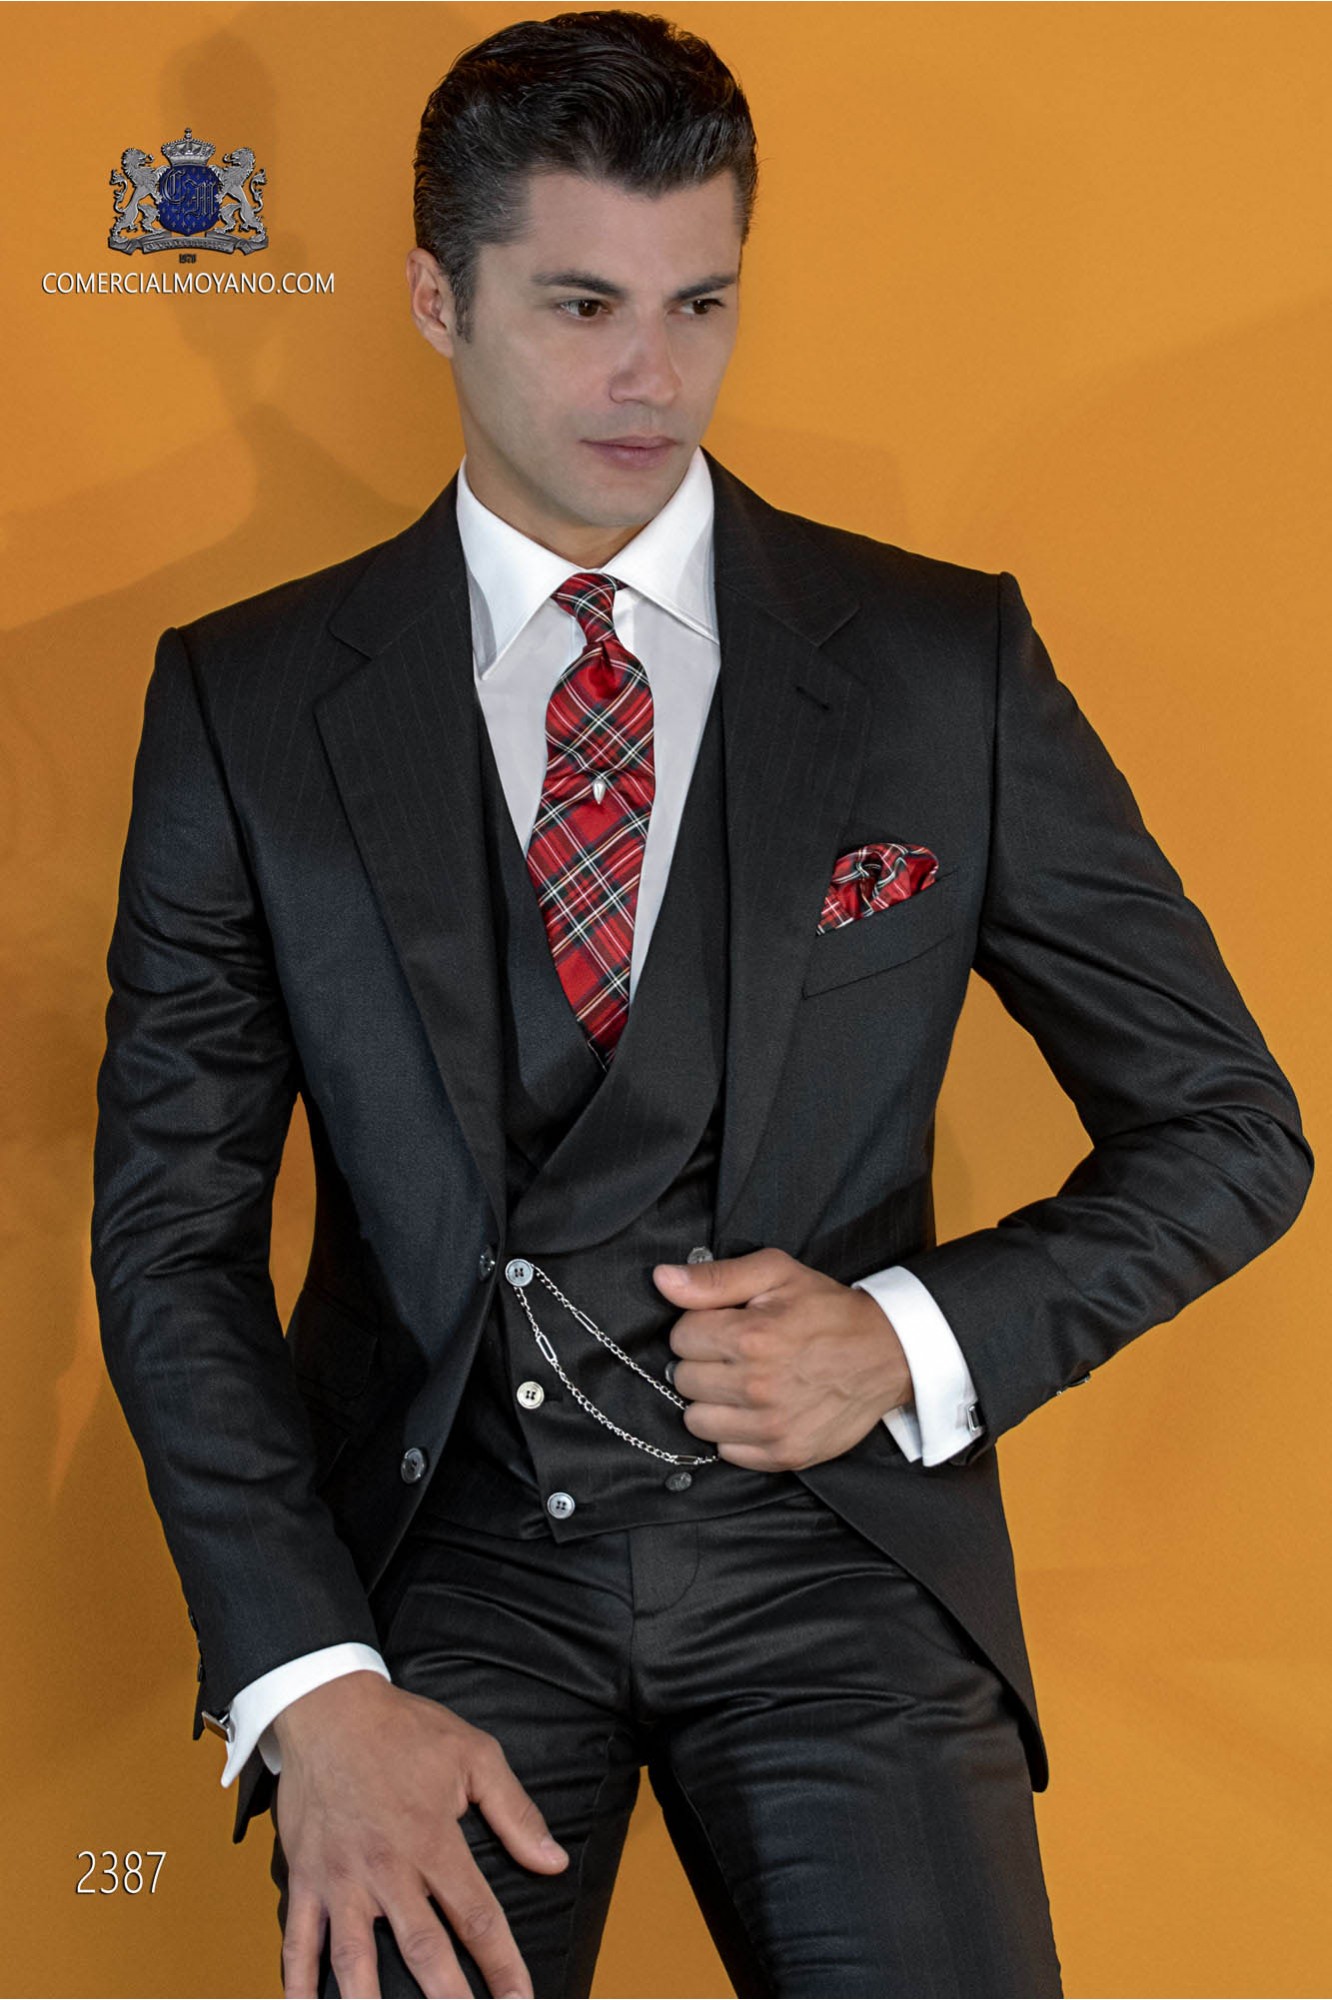 Traje negro con raya diplomática roja modelo: 2387 Mario Moyano colección Gentleman